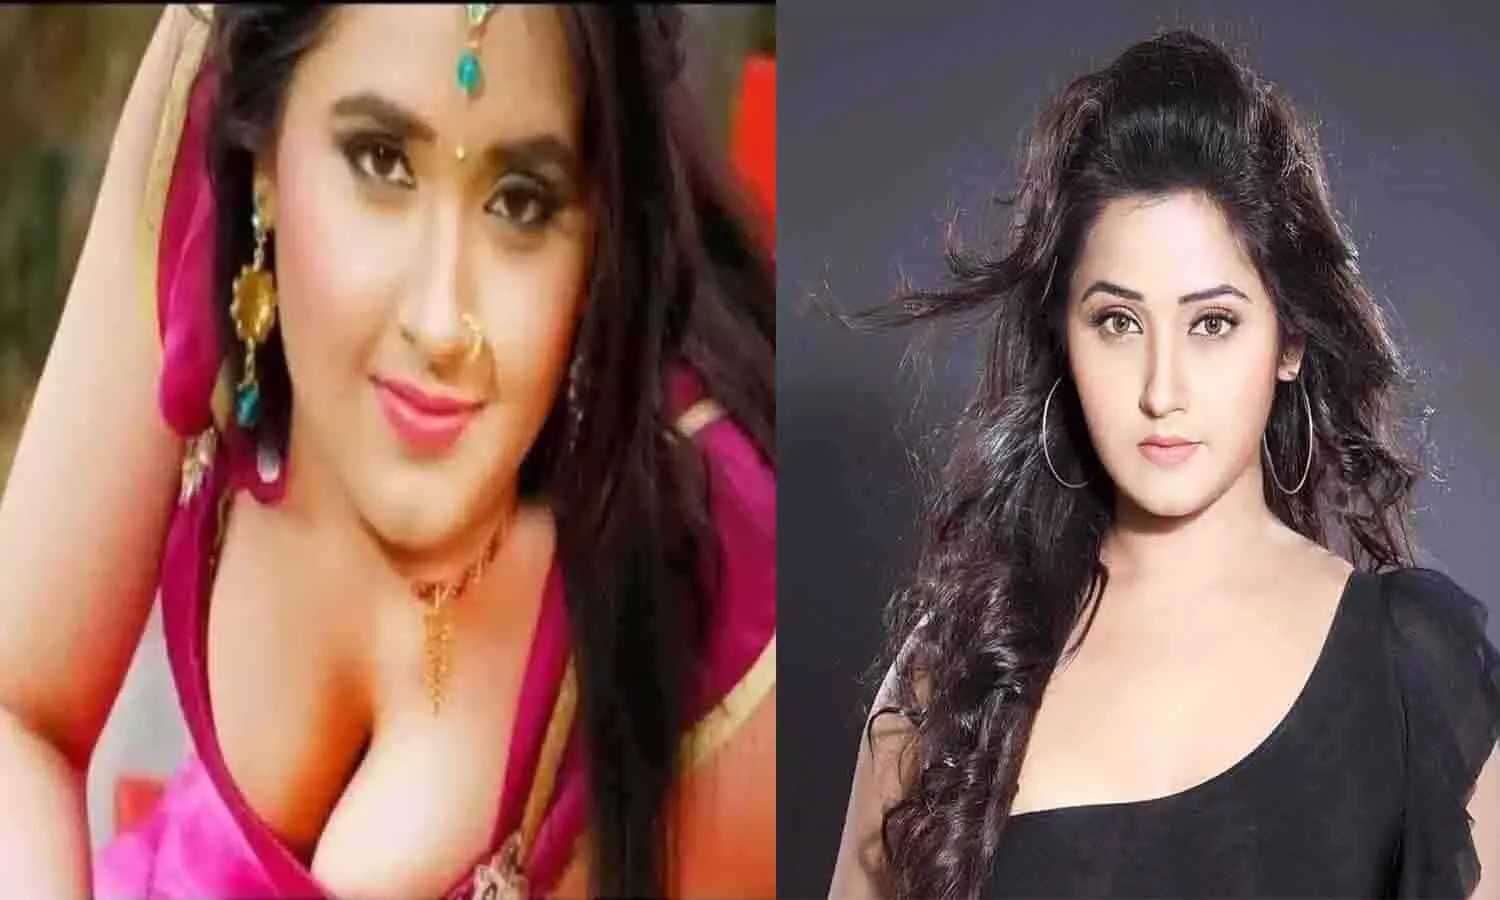 Redtube Of Kajal Raghwani - Bhojpuri Actress Kajal Raghwani à¤•à¤¾ à¤­à¥€ MMS à¤µà¤¾à¤¯à¤°à¤²? | MMS of Bhojpuri actress Kajal  Raghwani also viral?